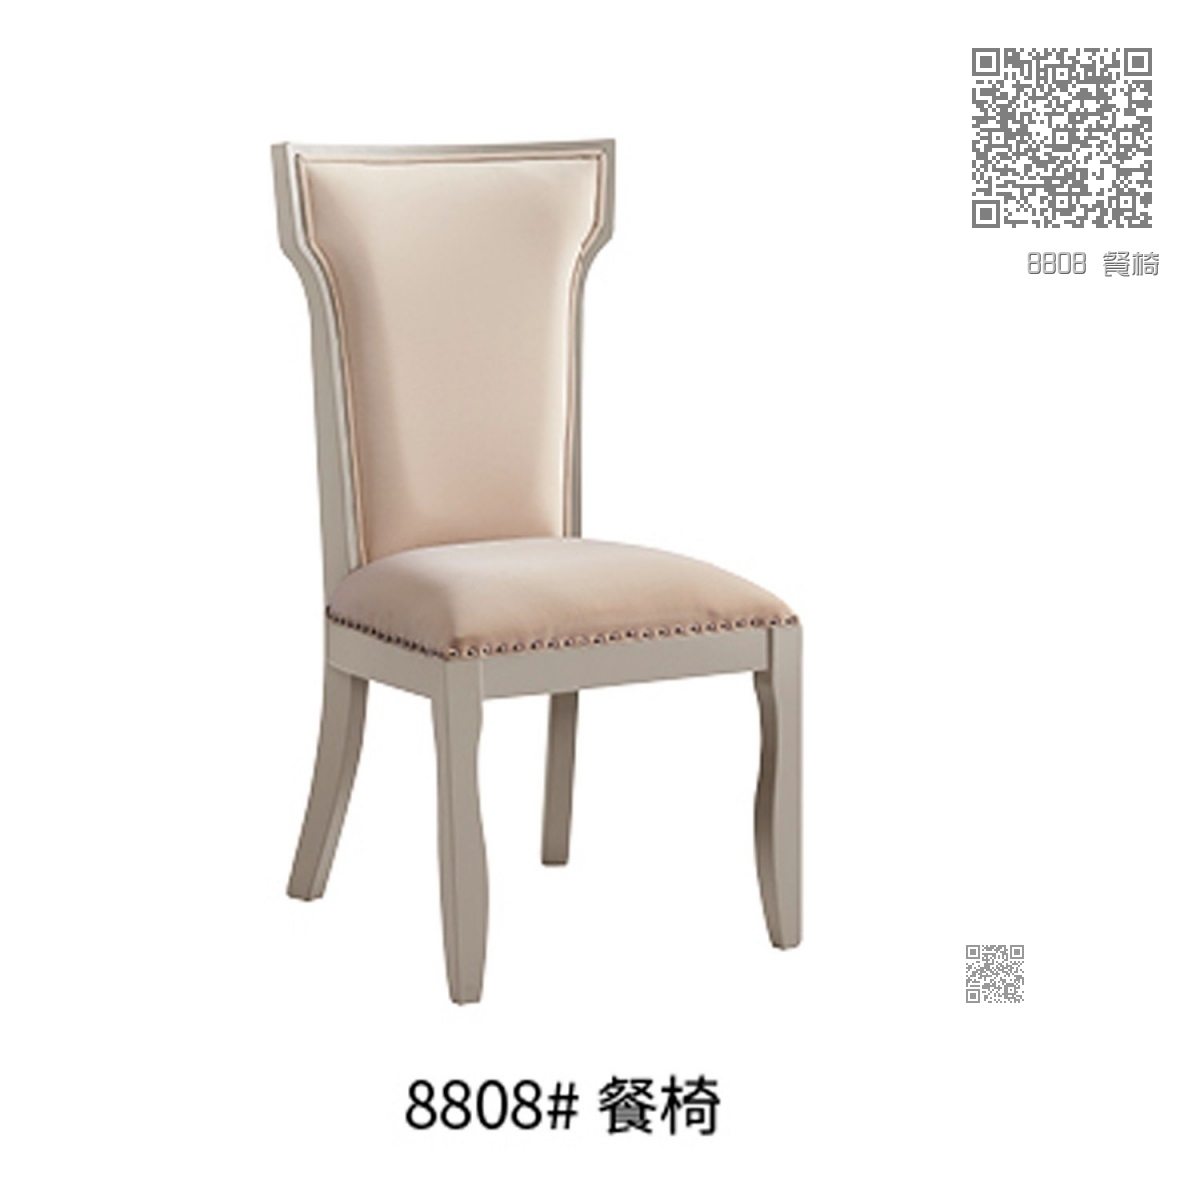 8808 餐椅